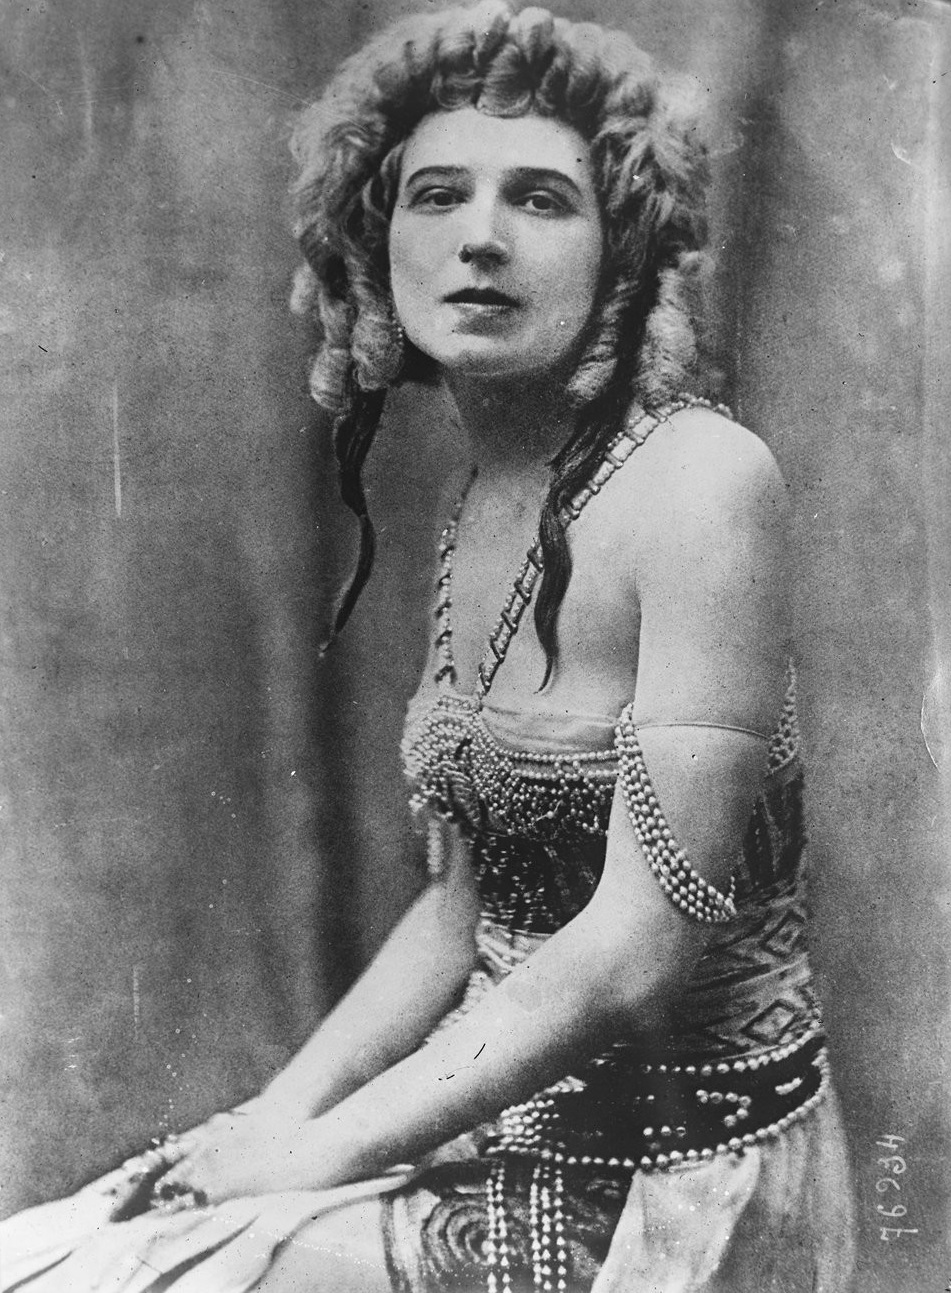 Das Bild zeigt eine historische Schwarz-Weiß-Fotografie von Ida Rubinstein in einem aufwendig verzierten Bühnenkostüm mit Perlen. Sie sitzt mit gefalteten Händen und voluminösem lockigem Haar vor einem neutralen Hintergrund.